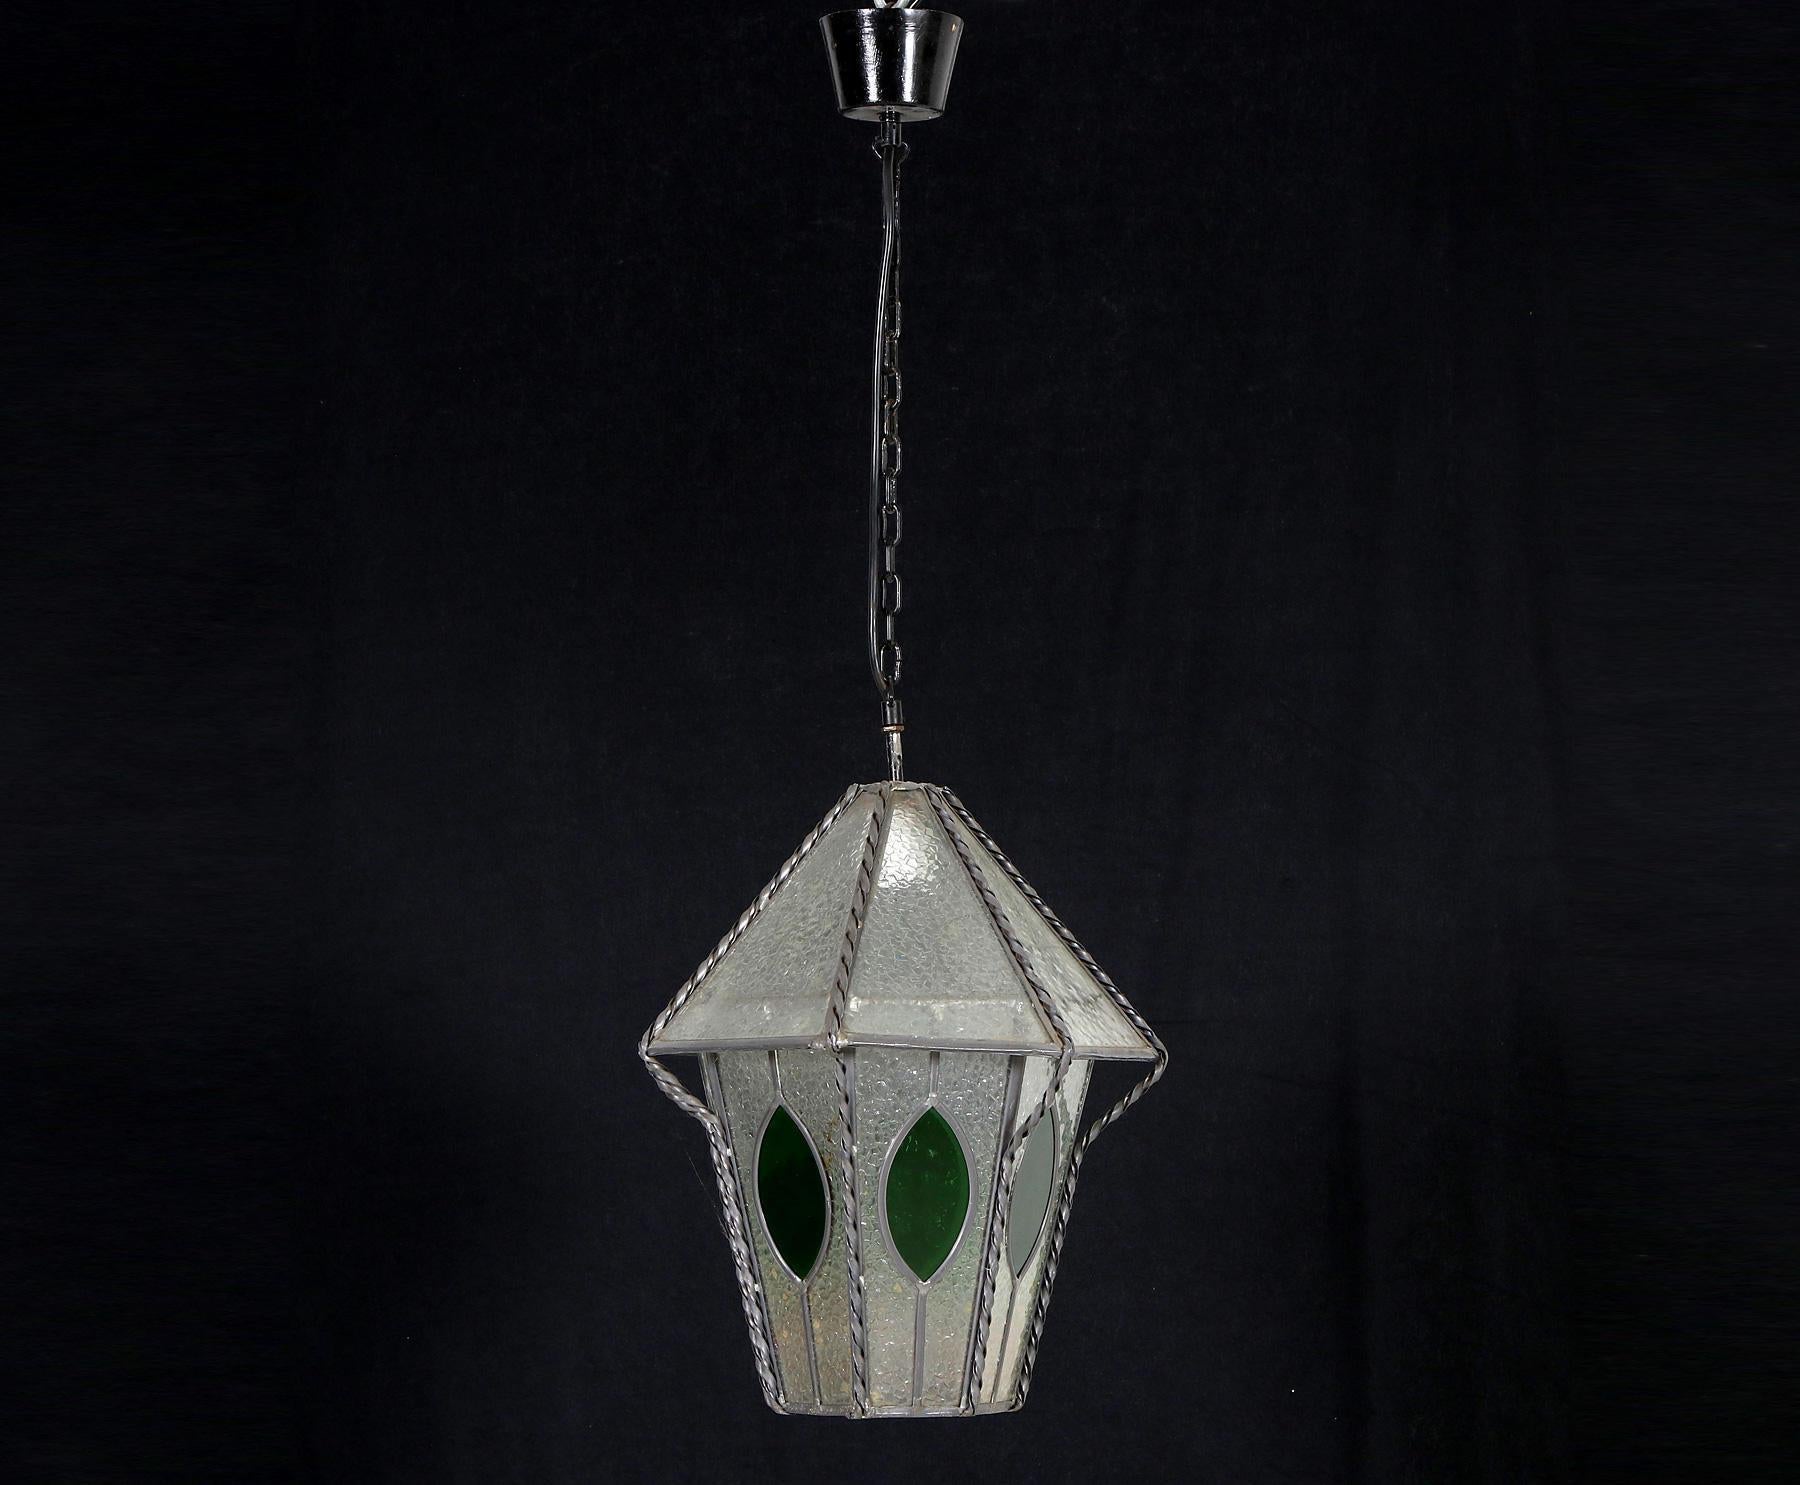 Lanterne Art Nouveau fabriquée en Allemagne vers 1950, corps émaillé, décoré de verre coloré et ornementé vert, électrifiée et équipée d'une douille E27, quelques signes d'âge et d'usure,
Mesure : Hauteur approximative 50 cm.